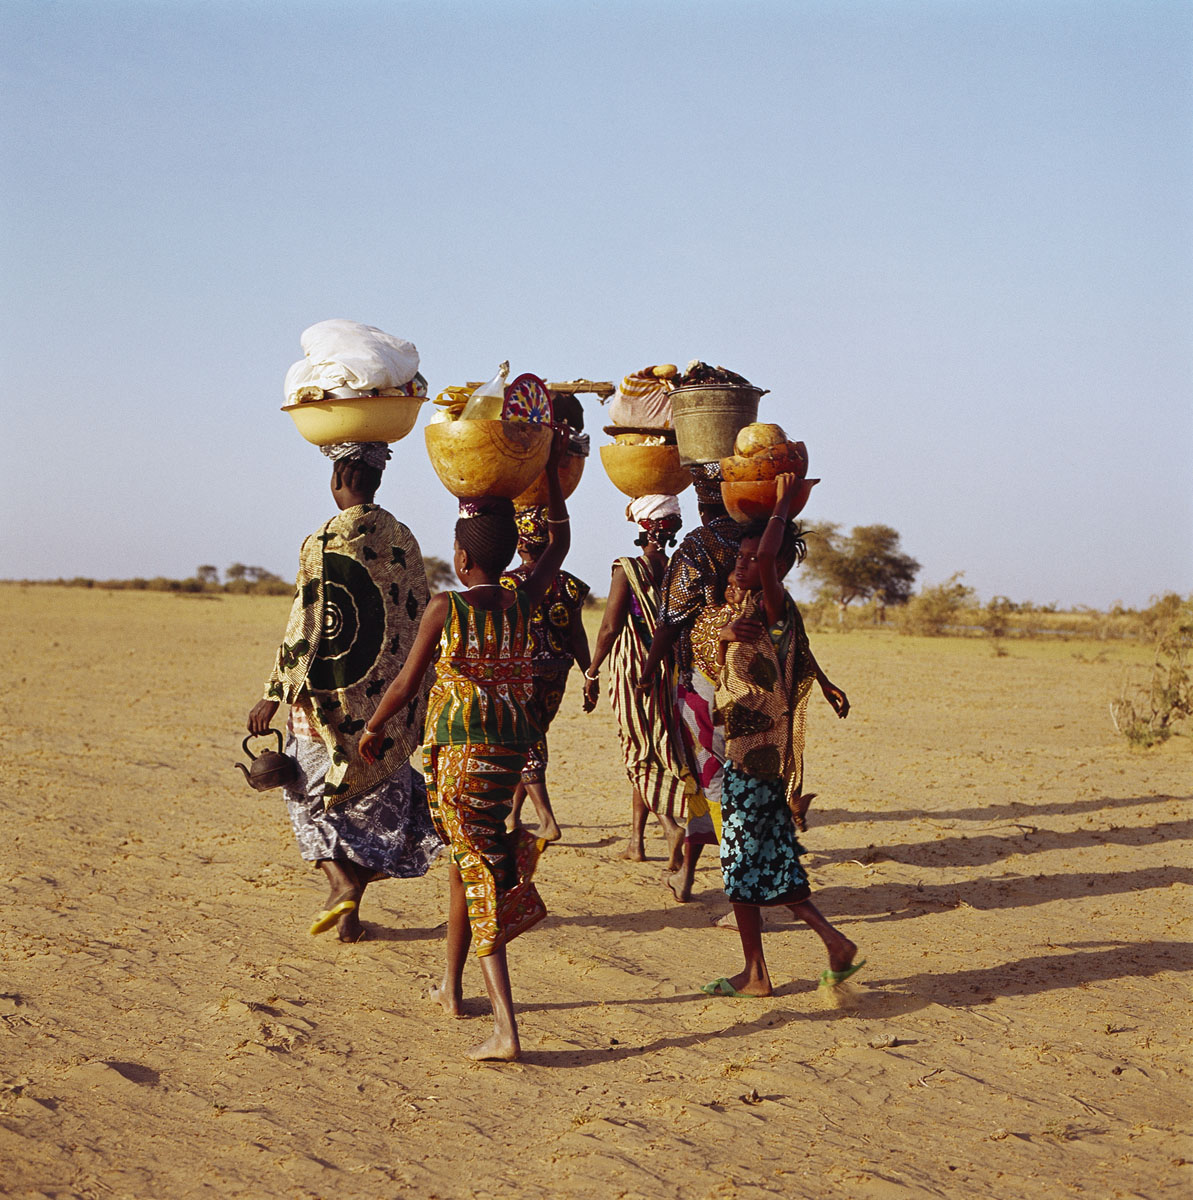 La photographie montre quatre femmes marchant dans le sable.